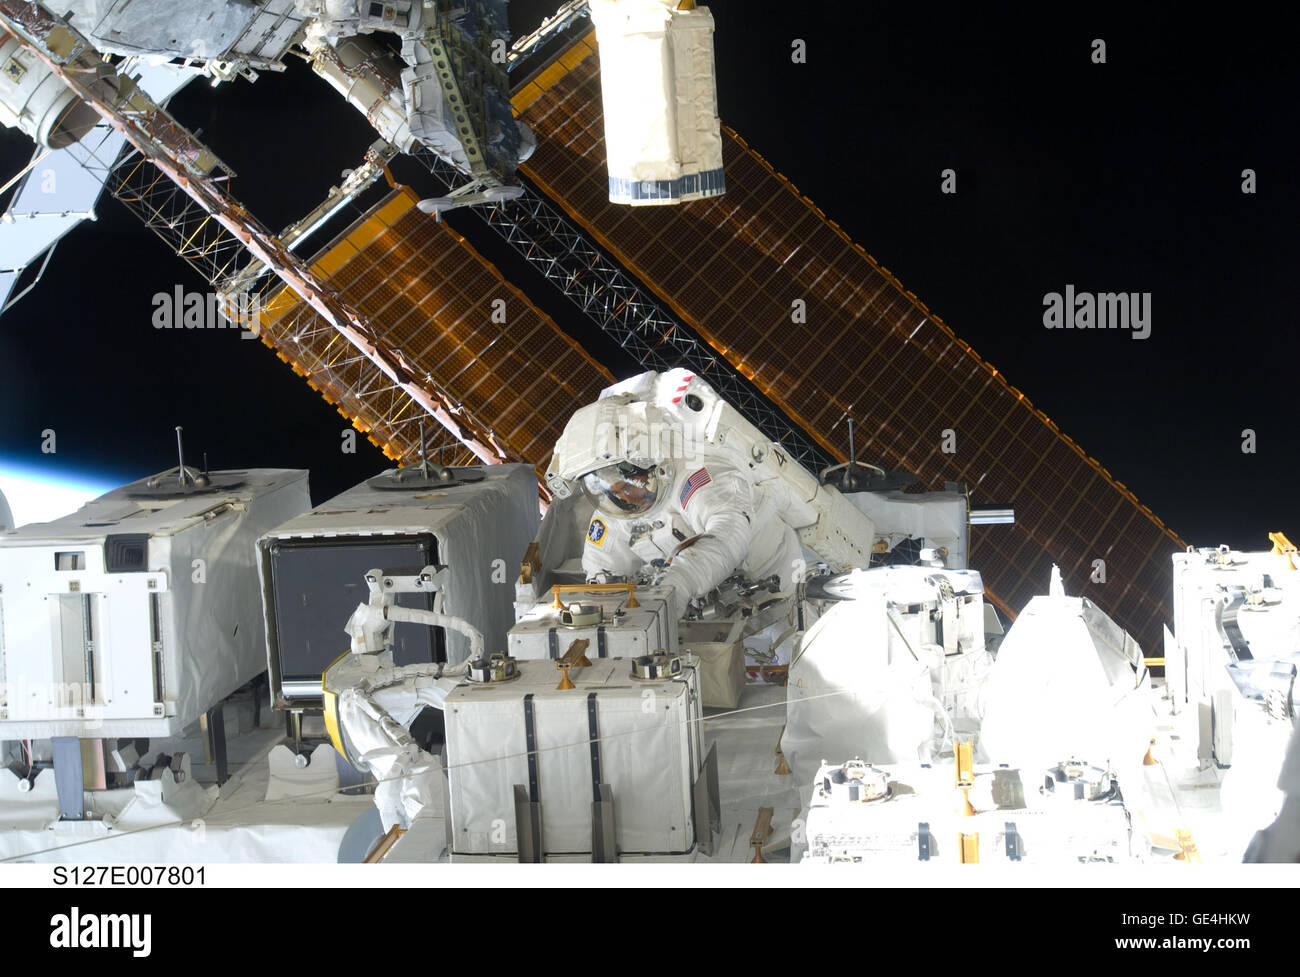 (22 Juli 2009) Astronaut Christopher Cassidy, STS-127 Missionsspezialisten, ist in der Mitte dieser breiten erschossen fotografiert während der Endeavour dritten Raumweg von geplanten fünf insgesamt für diesen Flug abgebildet. Cassidy ist in der Nähe von The Japanese Experiment Modul - ausgesetzt-Anlage (JEF). Dies war Cassidy das erste einer geplanten drei Sitzungen für ihn. Astronaut Dave Wolf, Cassidy EVA Kollege, ist aus dem Rahmen.  STS-127 auf Space Shuttle Endeavor am 15. Juli 2009 ins Leben gerufen. Die Mission endete am 31. Juli 2009.   Bild-Nr.: S127-E-007801 Stockfoto